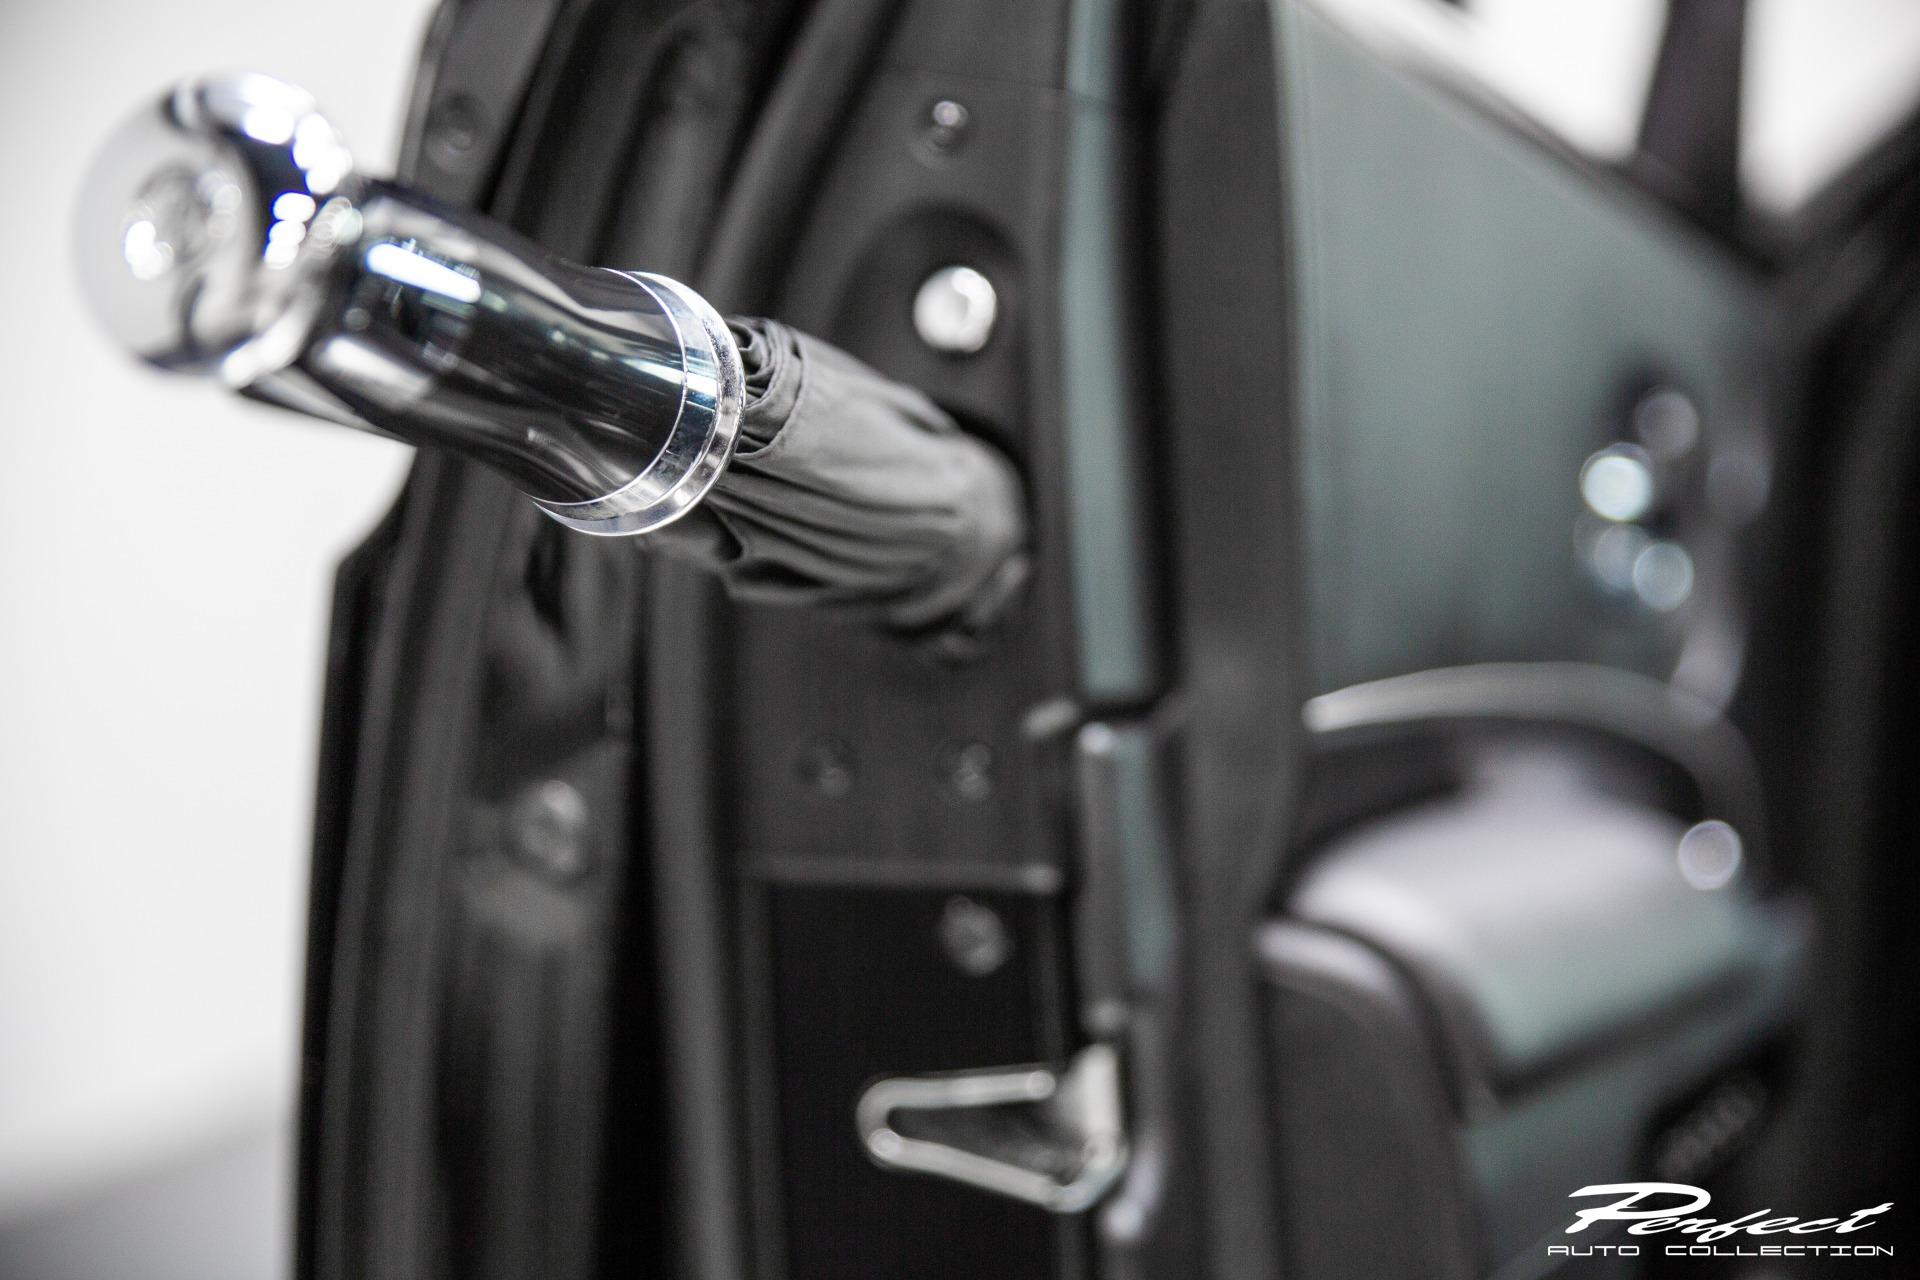 2015 Rolls-Royce Ghost Series II - Umbrella - Detail